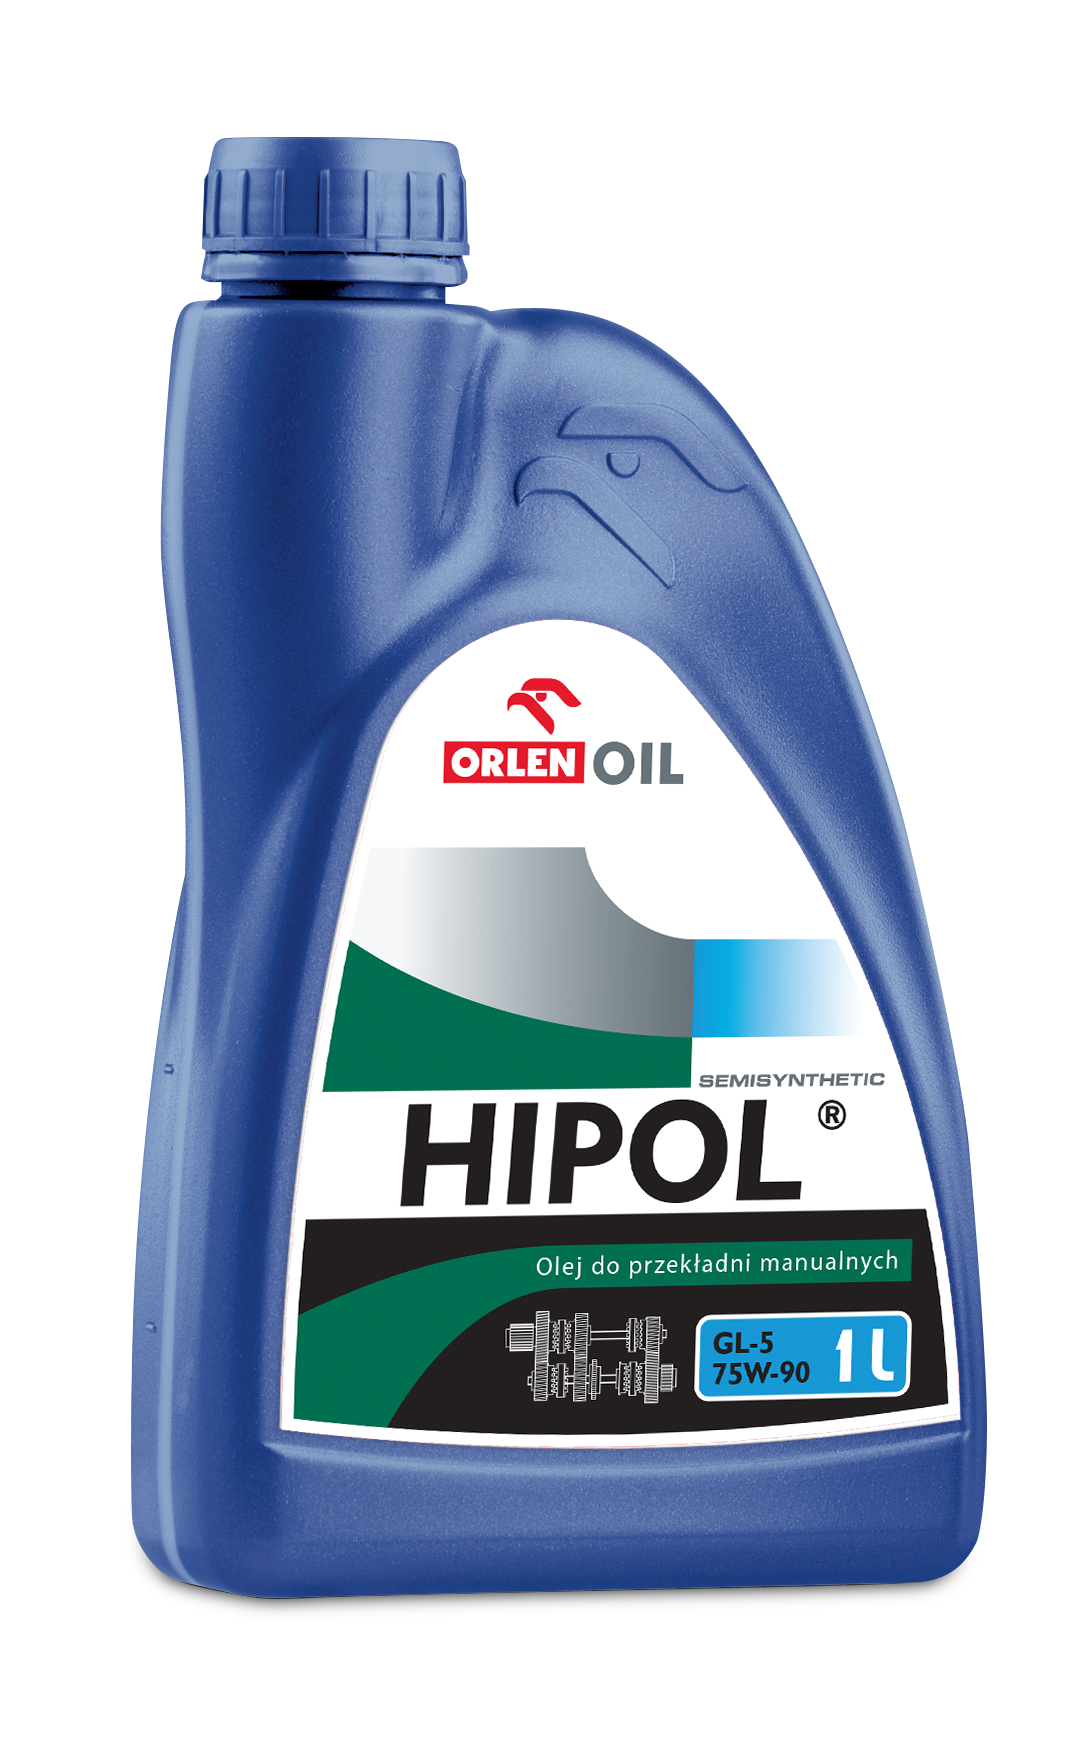 Orlen Oil Hipol SemiSyntetic 75W90 GL5 Полусинтетическое трансмиссионное масло для МКПП